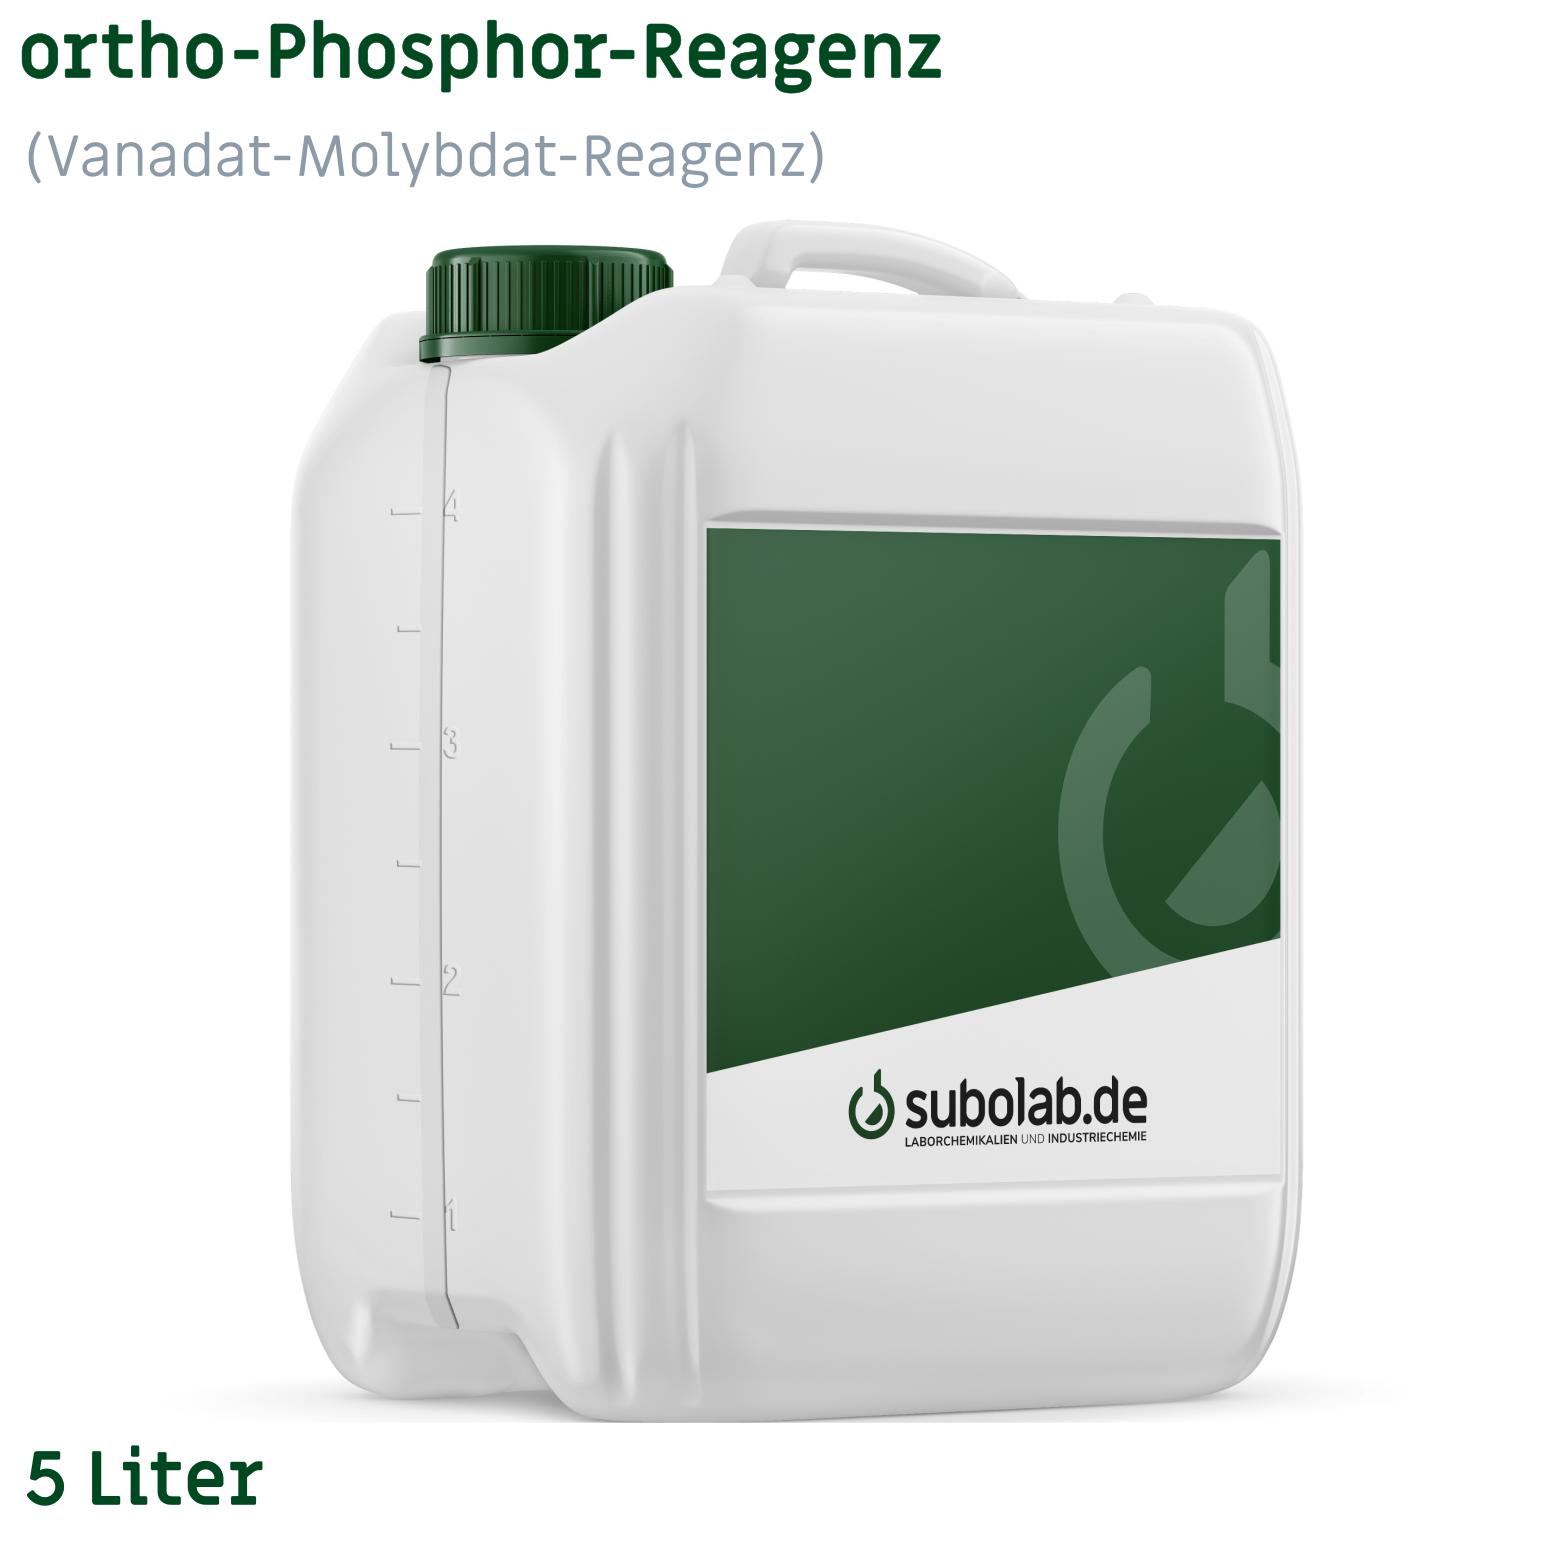 Bild von ortho - Phosphor - Reagenz (Vanadat-Molybdat-Reagenz) (5 Liter)